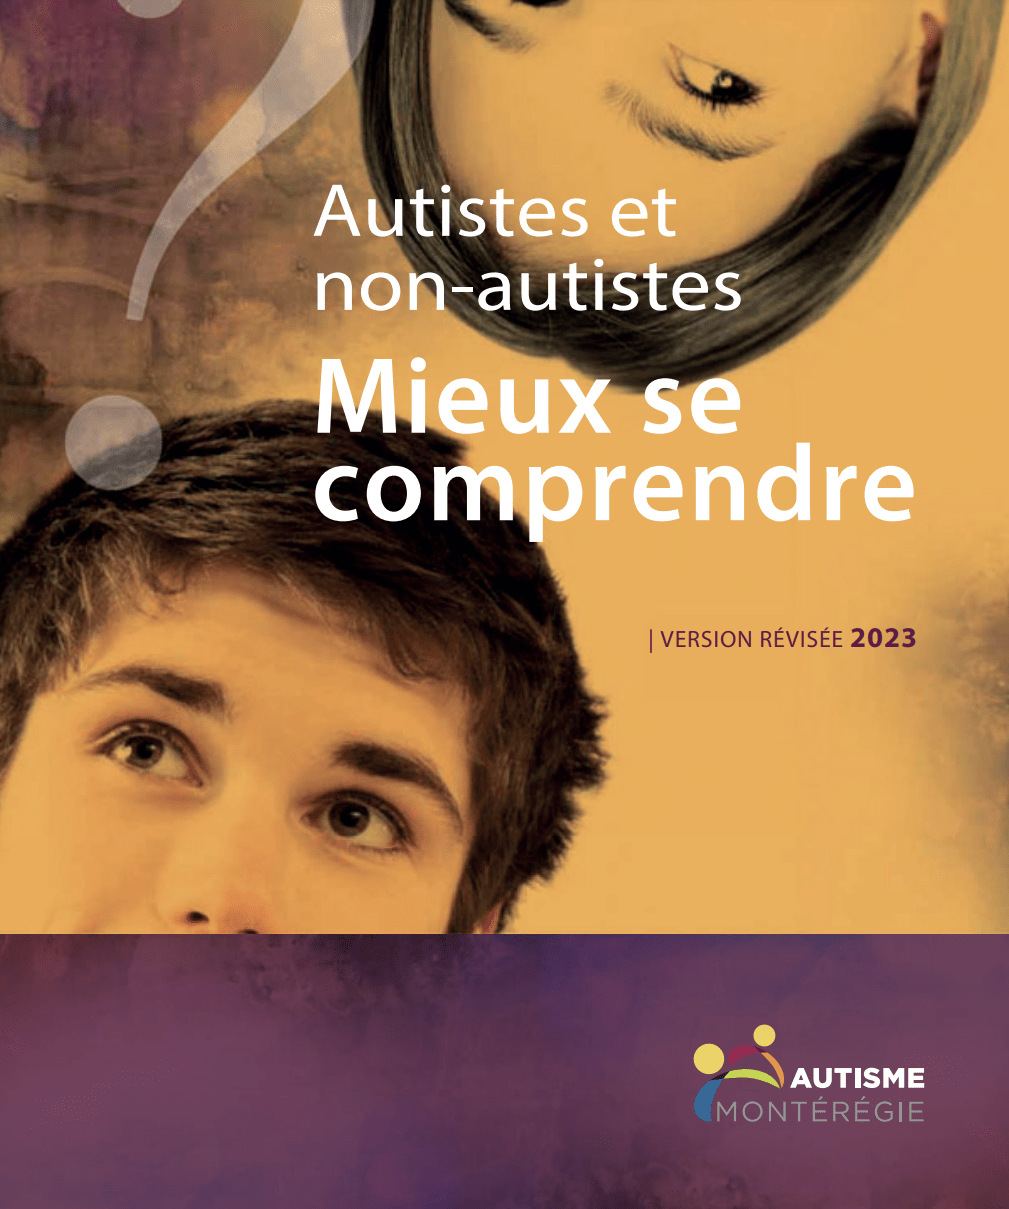 [Canada] Guide « Autistes et Non-Autistes : Mieux se comprendre » (Autisme Montérégie, 2023)